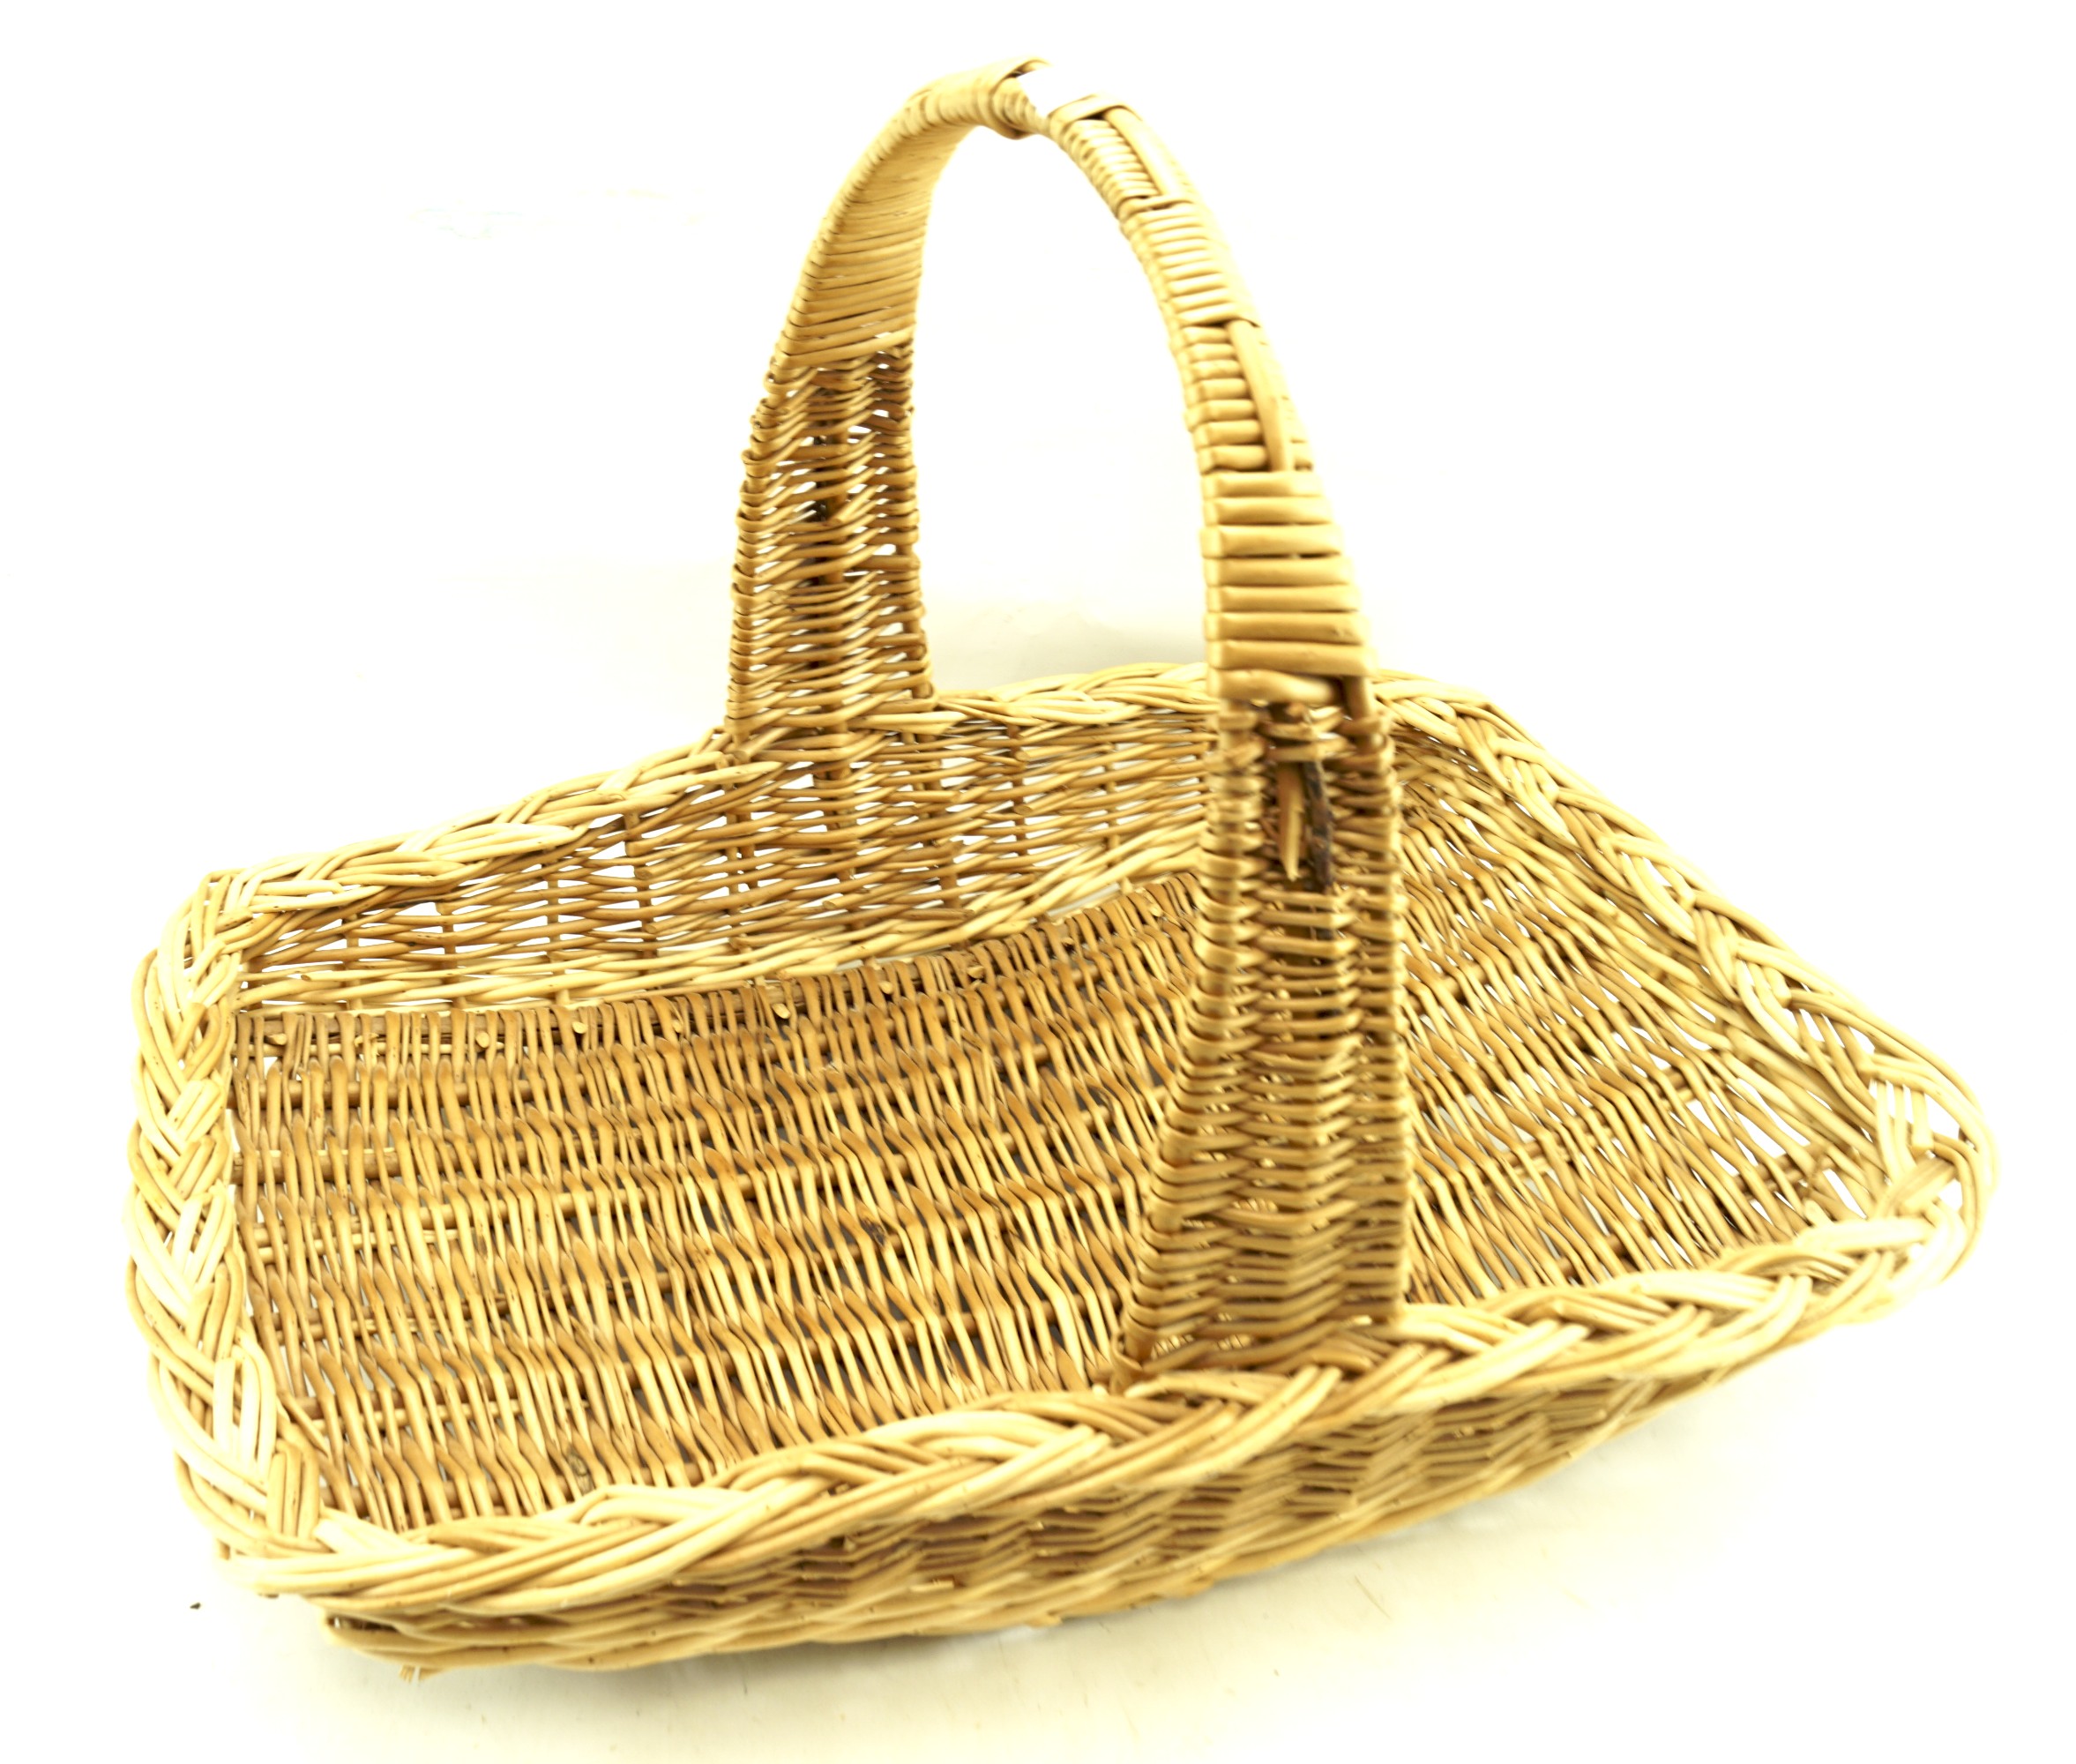 A wicker basket.